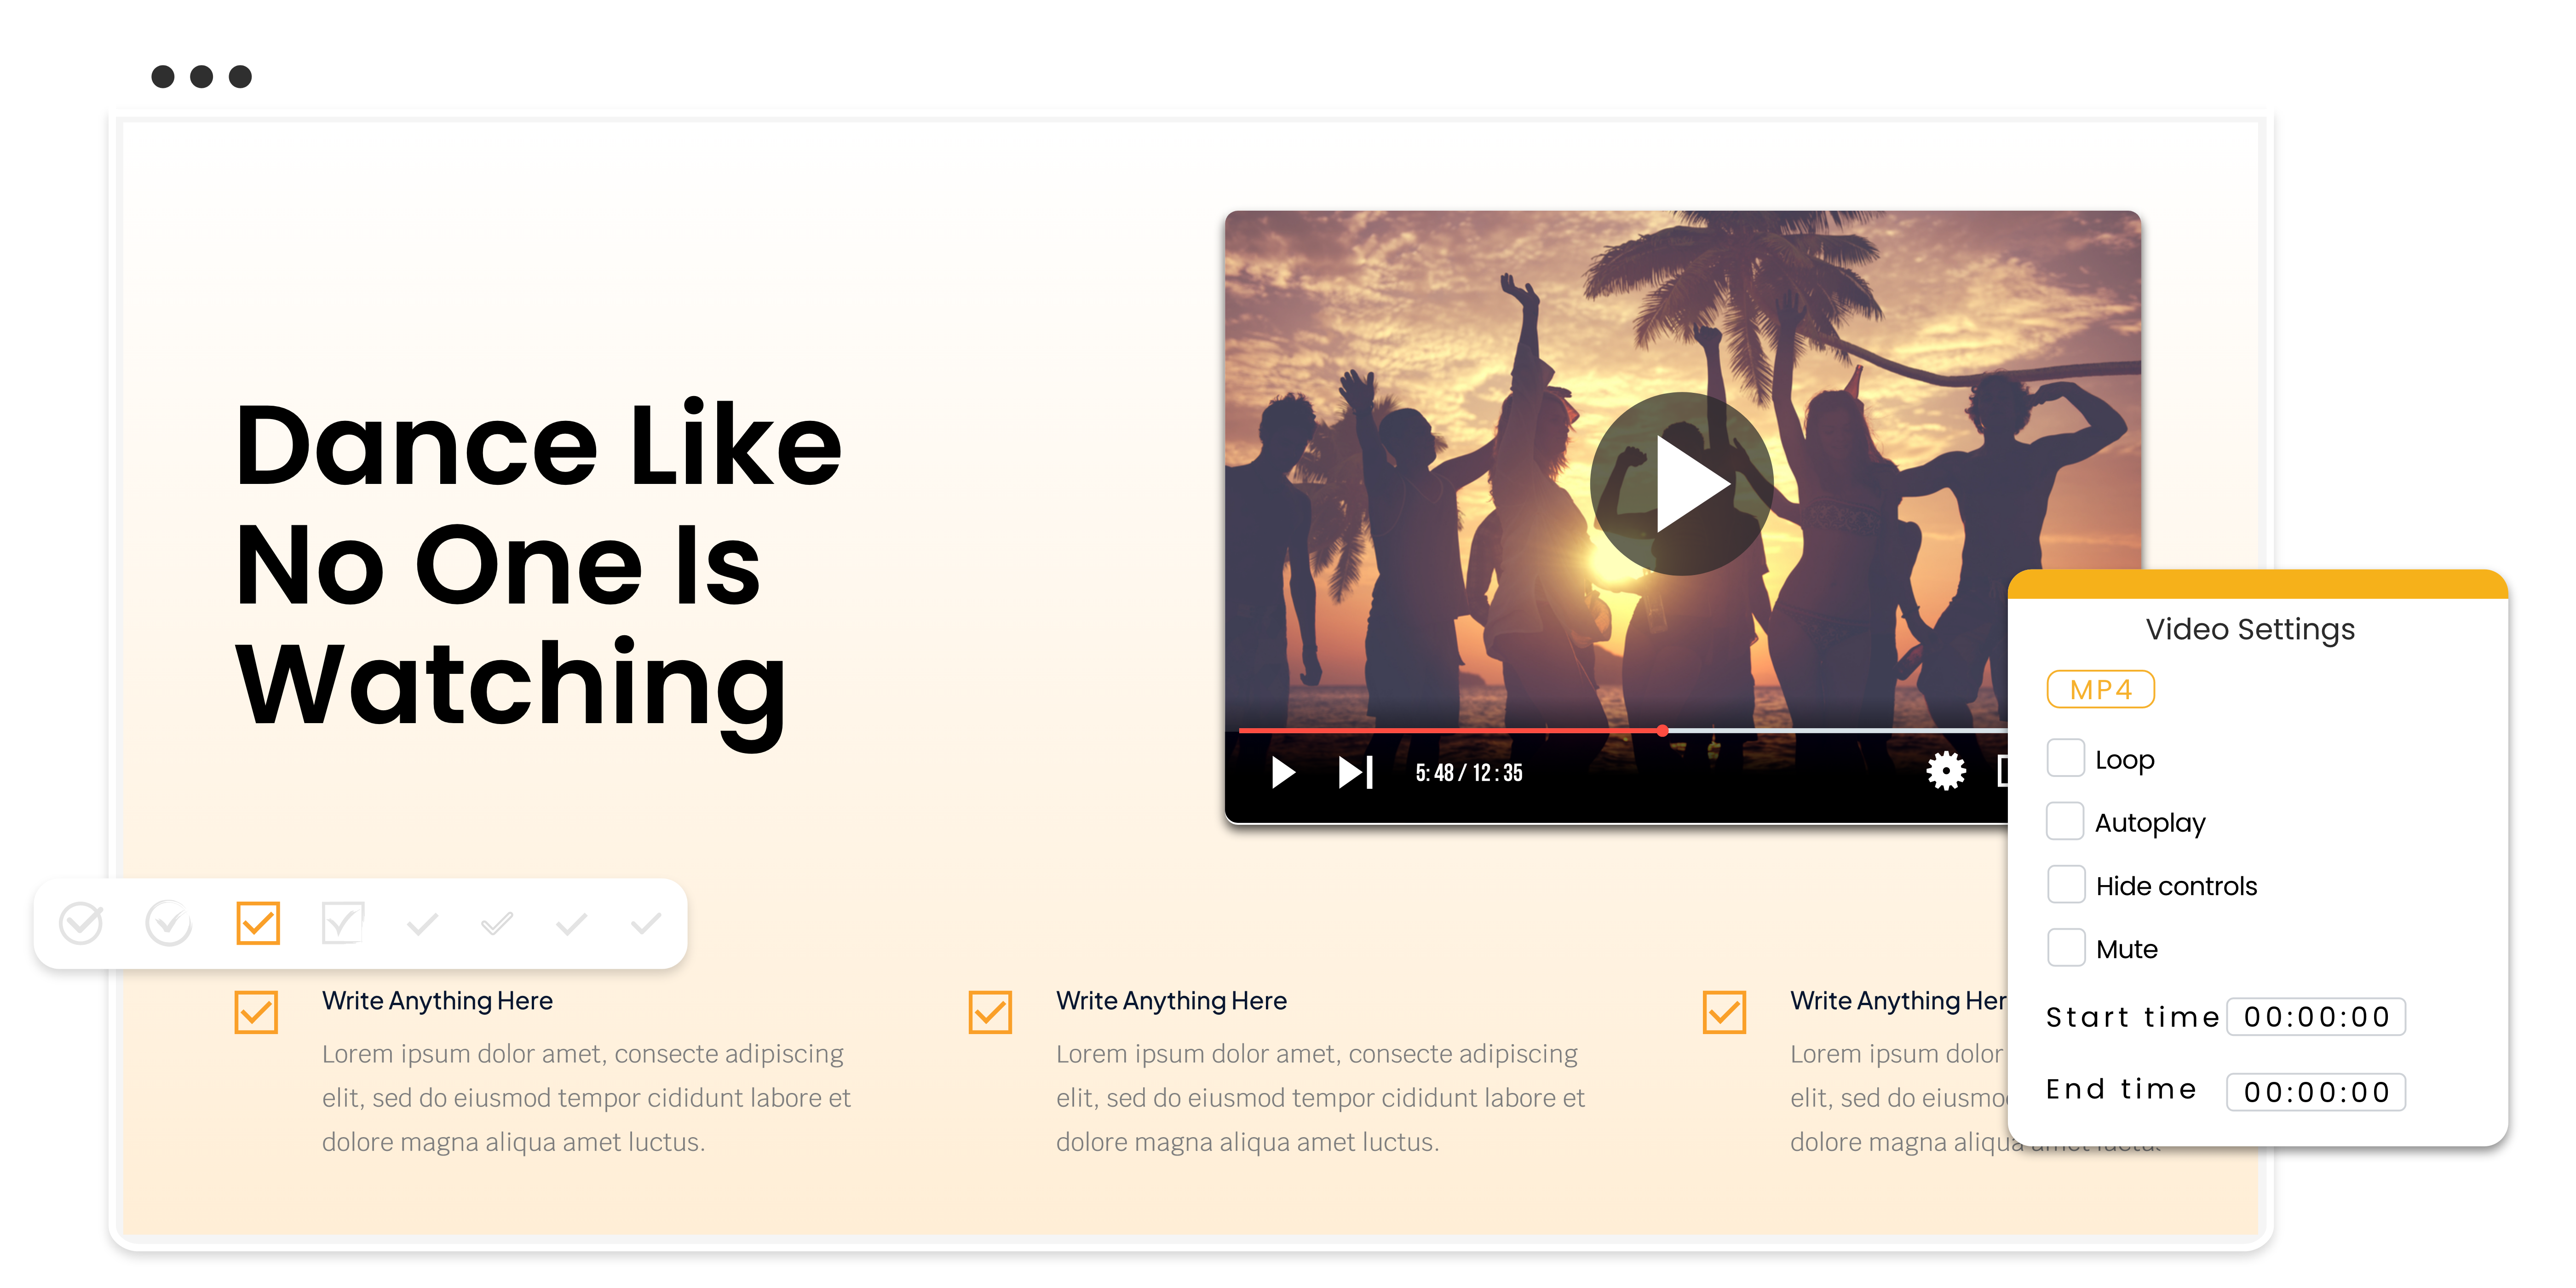 Een dia met video-instellingen en bedieningselementen, en dansende mensen bij zonsondergang op een strand in browserframe.